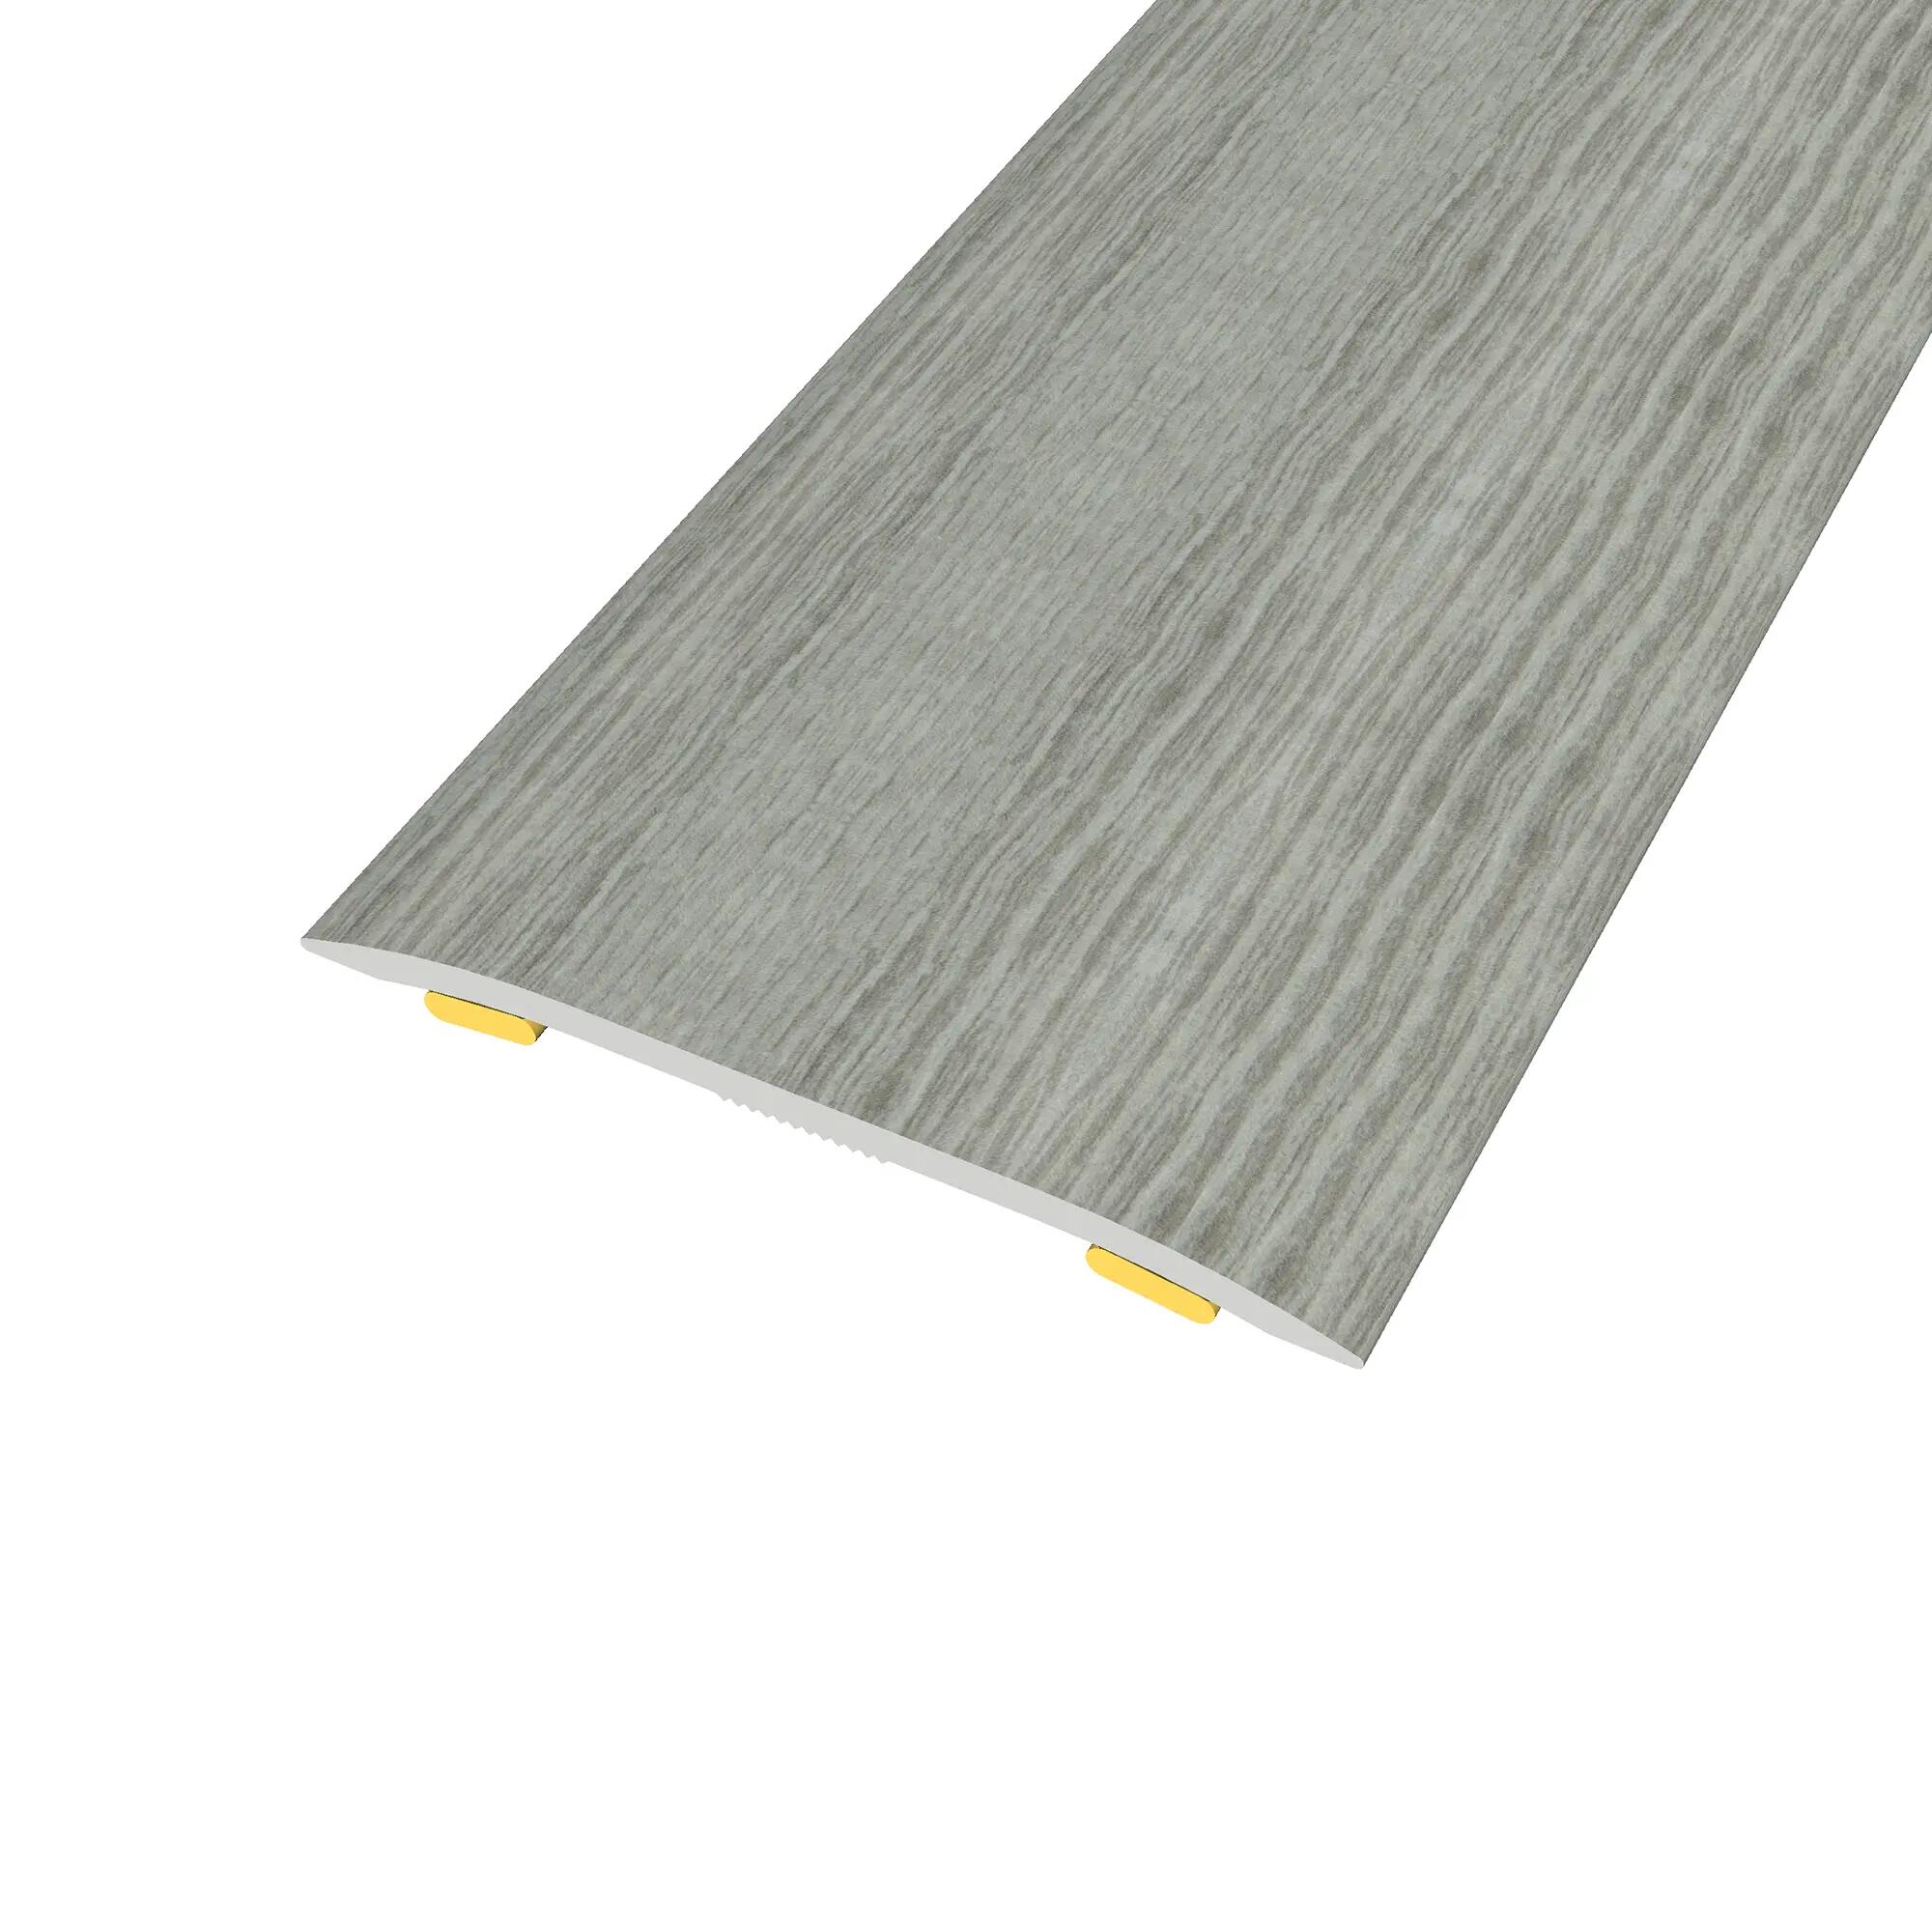 Perfil de dilatación de aluminio gris / plata 183 cm mod012